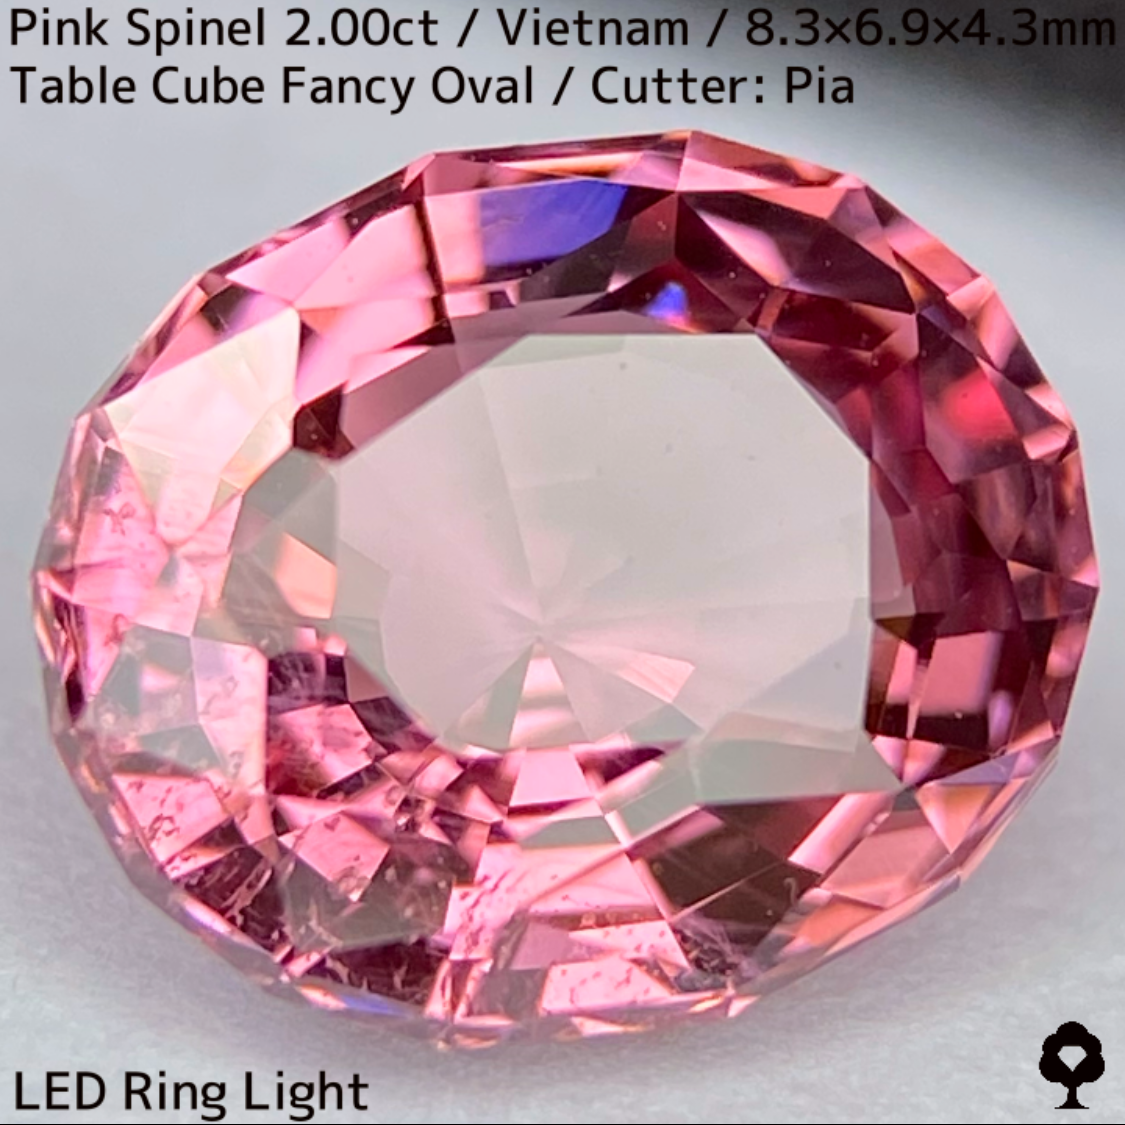 ベトナム産ピンクスピネル2.00ct★華やかなピンクの煌めき美しい軽やかなインクルが良い趣の貴重な2ctアップ